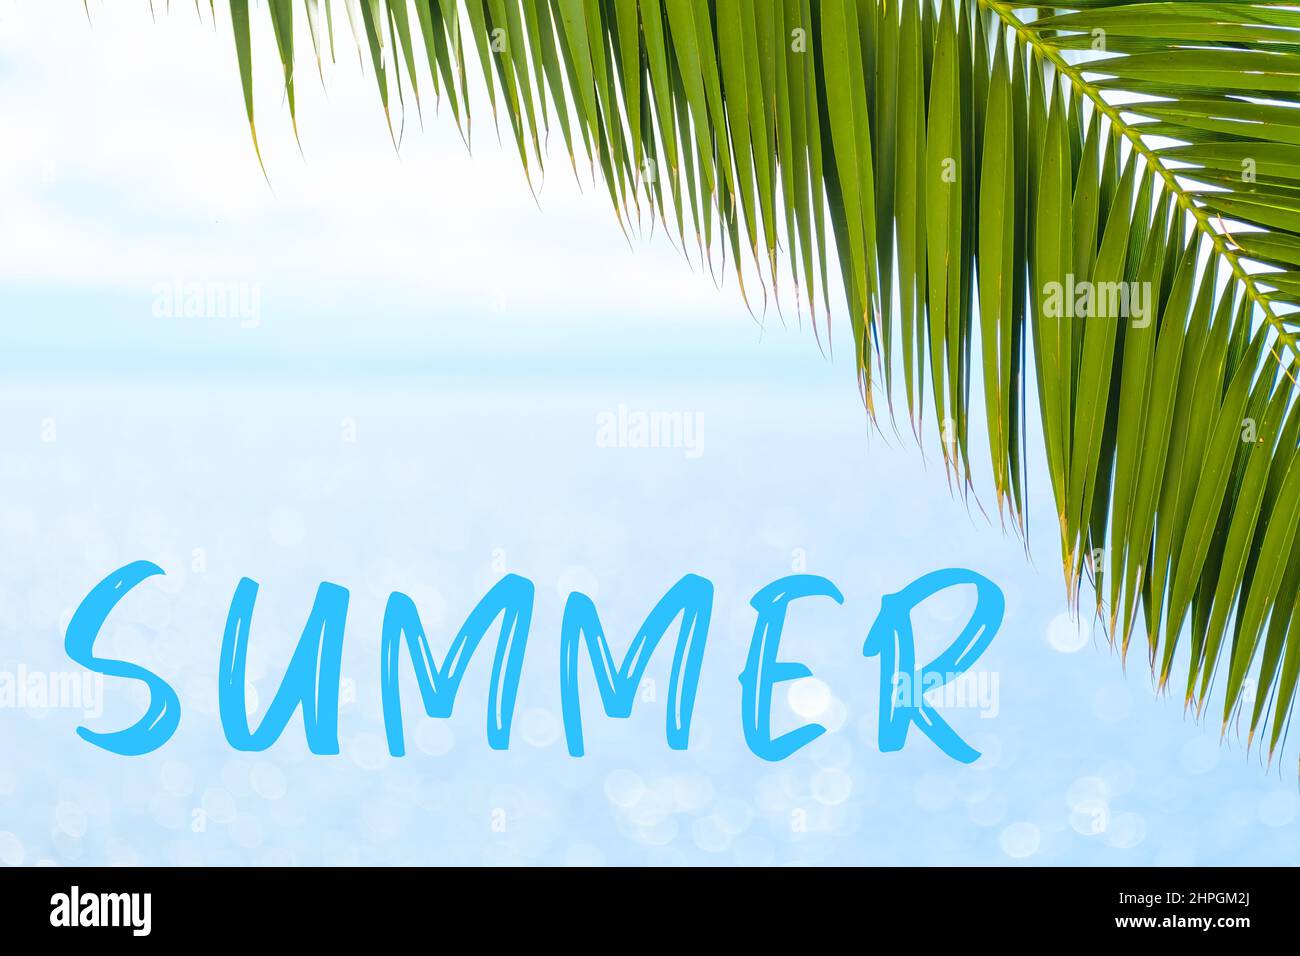 Sommertext auf dem Hintergrund mit Palmblatt und blauem Meer. Vorlage einer Grußkarte, einer Postkarte oder einer Werbung eines Reisebüros. Stockfoto